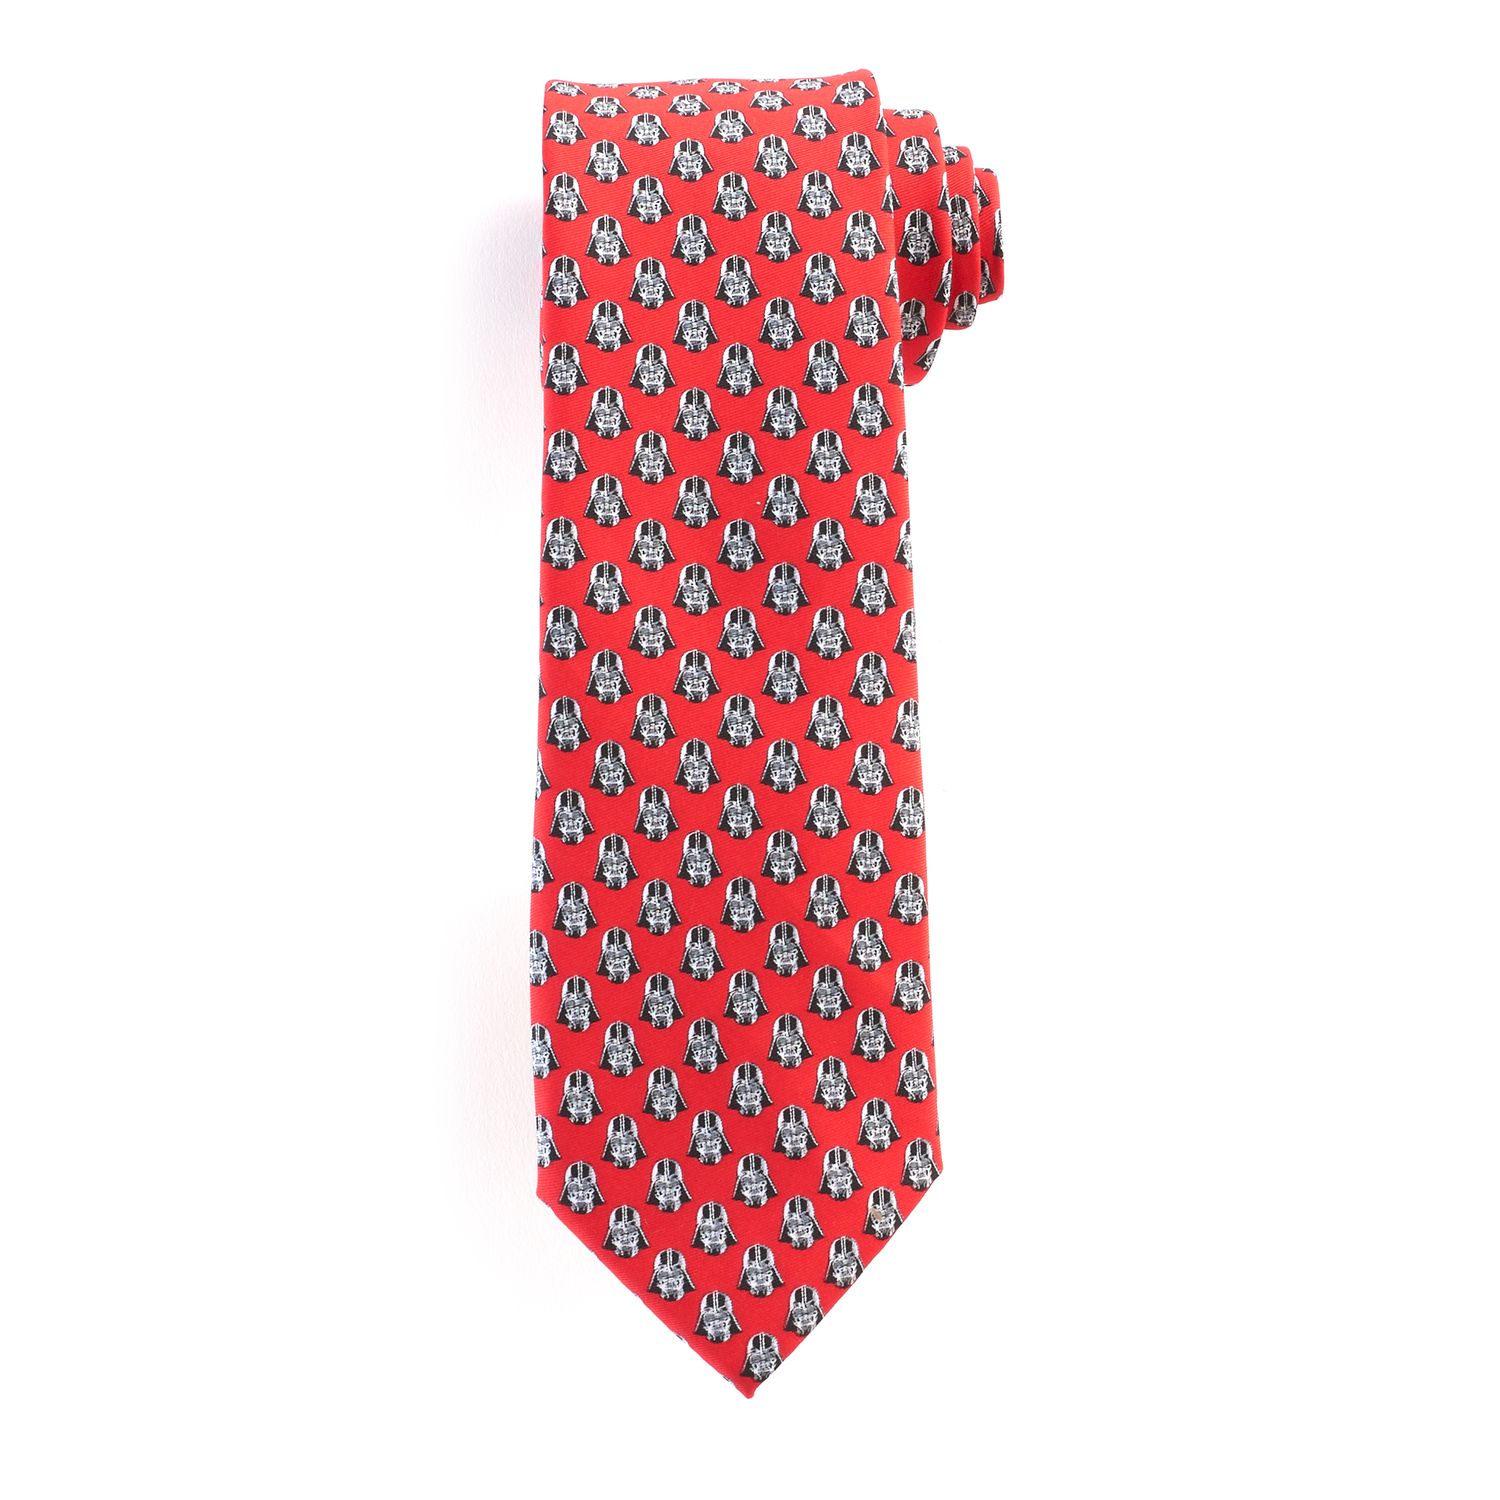 Men's Star Wars Tie